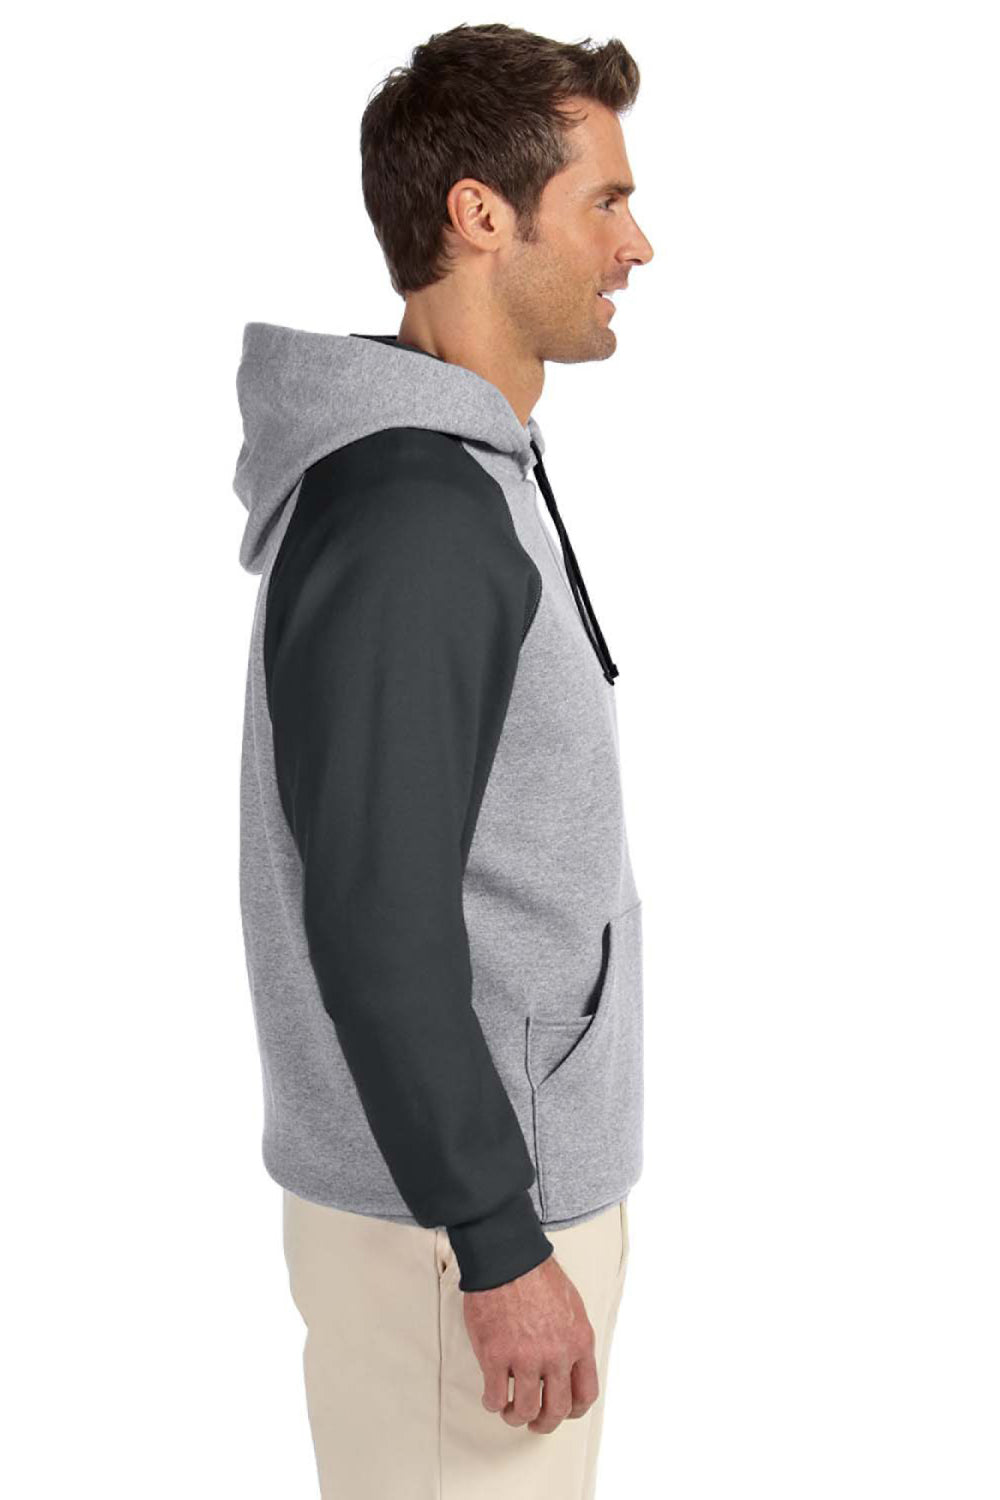 Jerzees 96CR Mens NuBlend Fleece Hooded Sweatshirt Hoodie Oxford Grey/Black Side